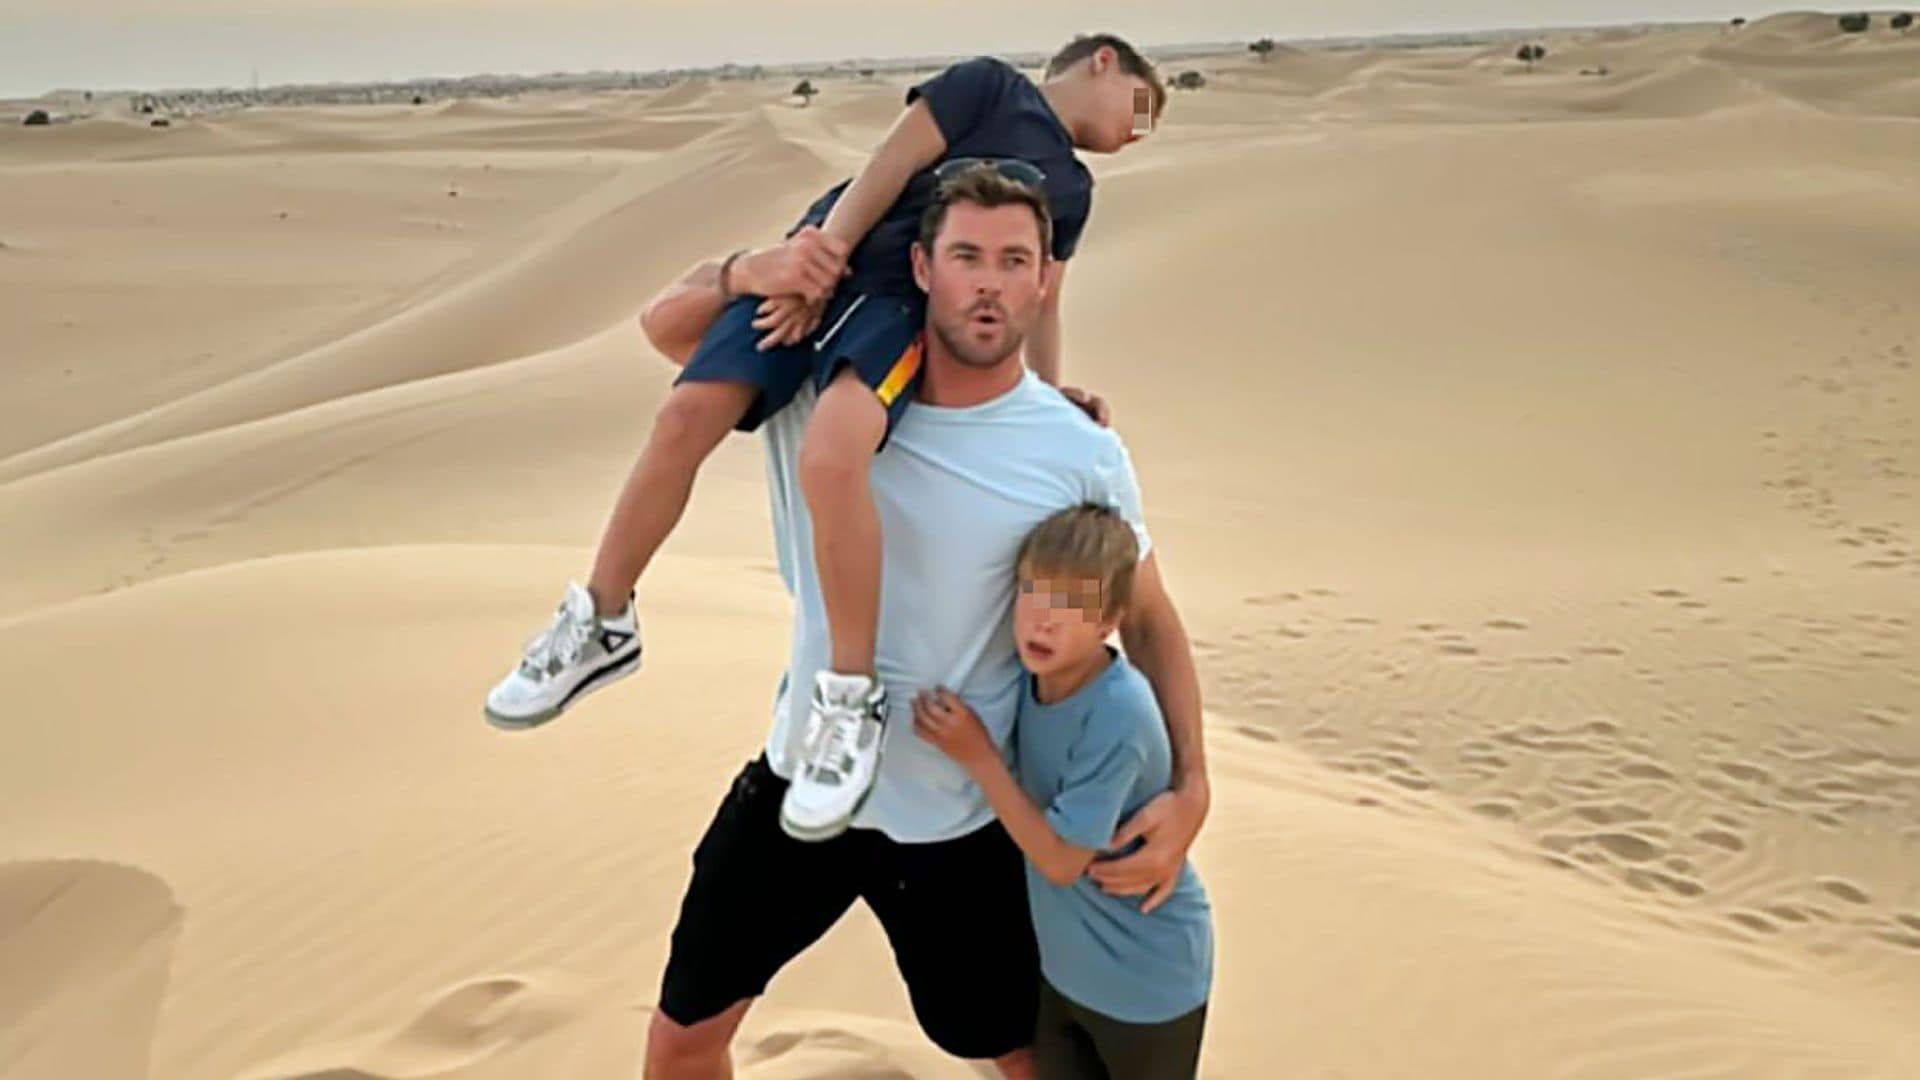 La aventura en el desierto de Chris Hemsworth con su familia mientras Elsa Pataky está en España